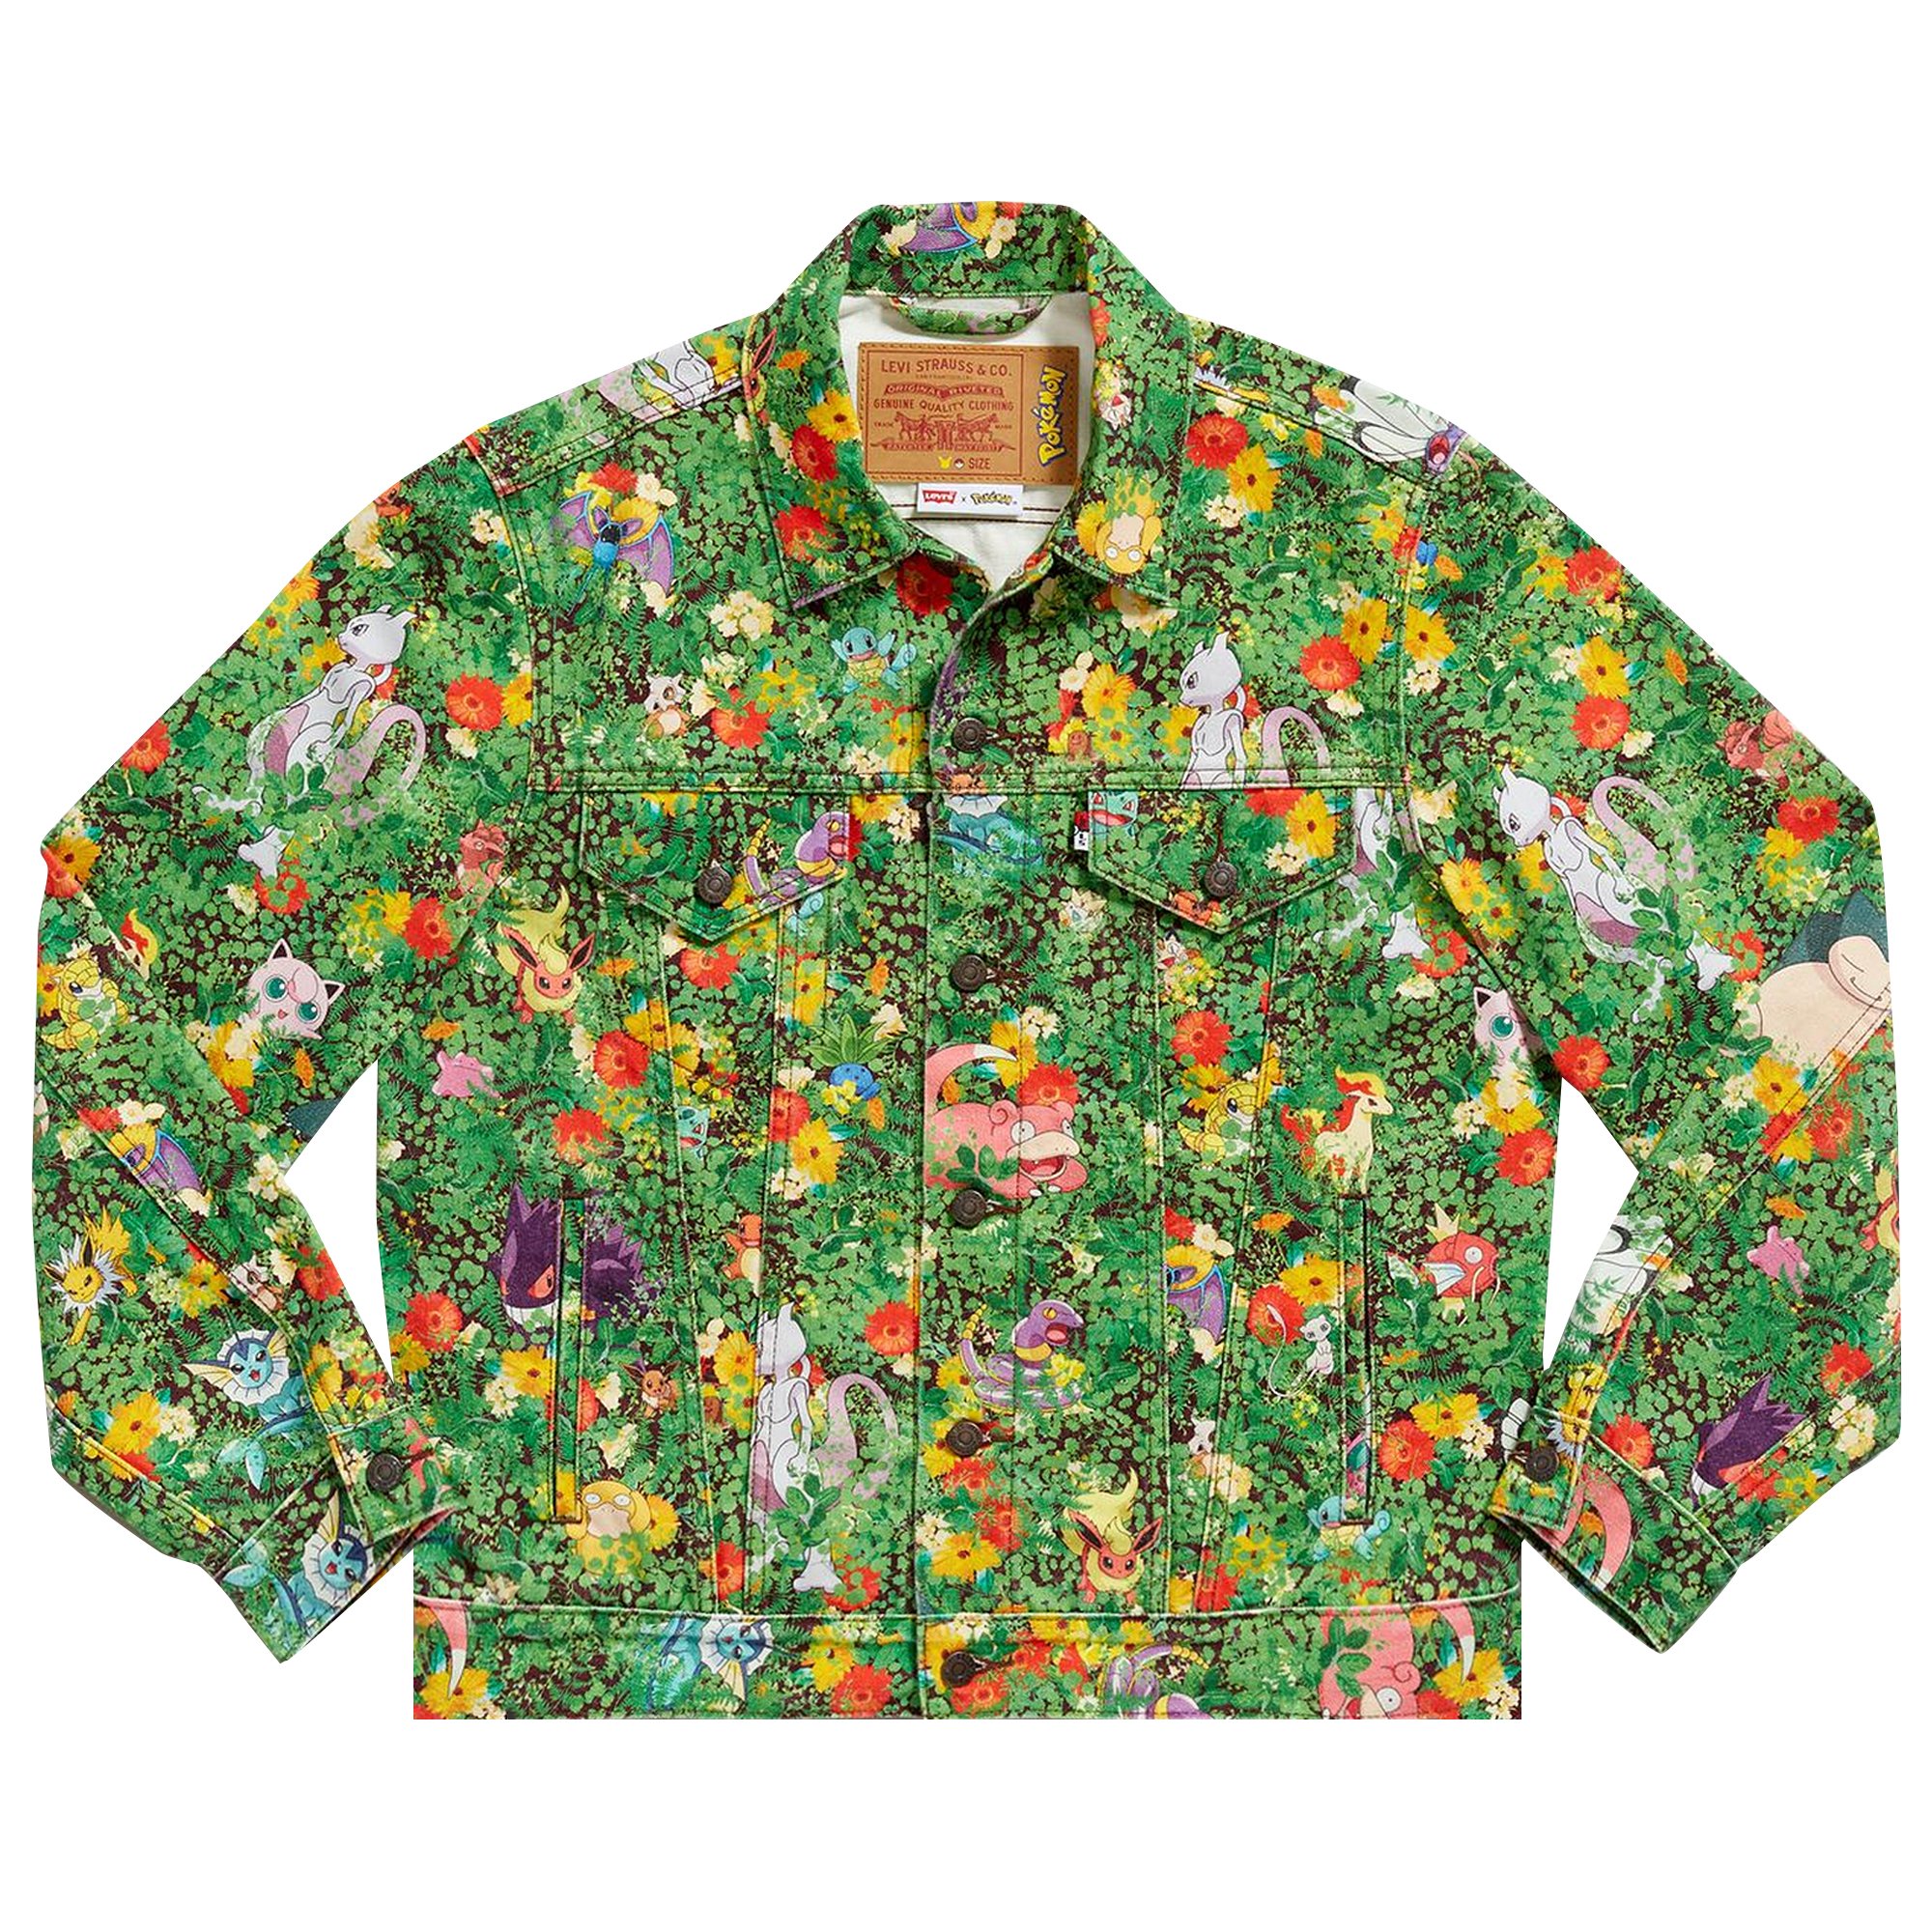 Levi's x Pokémon Vintage Fit Trucker Jacket 'Garden Multicolor'